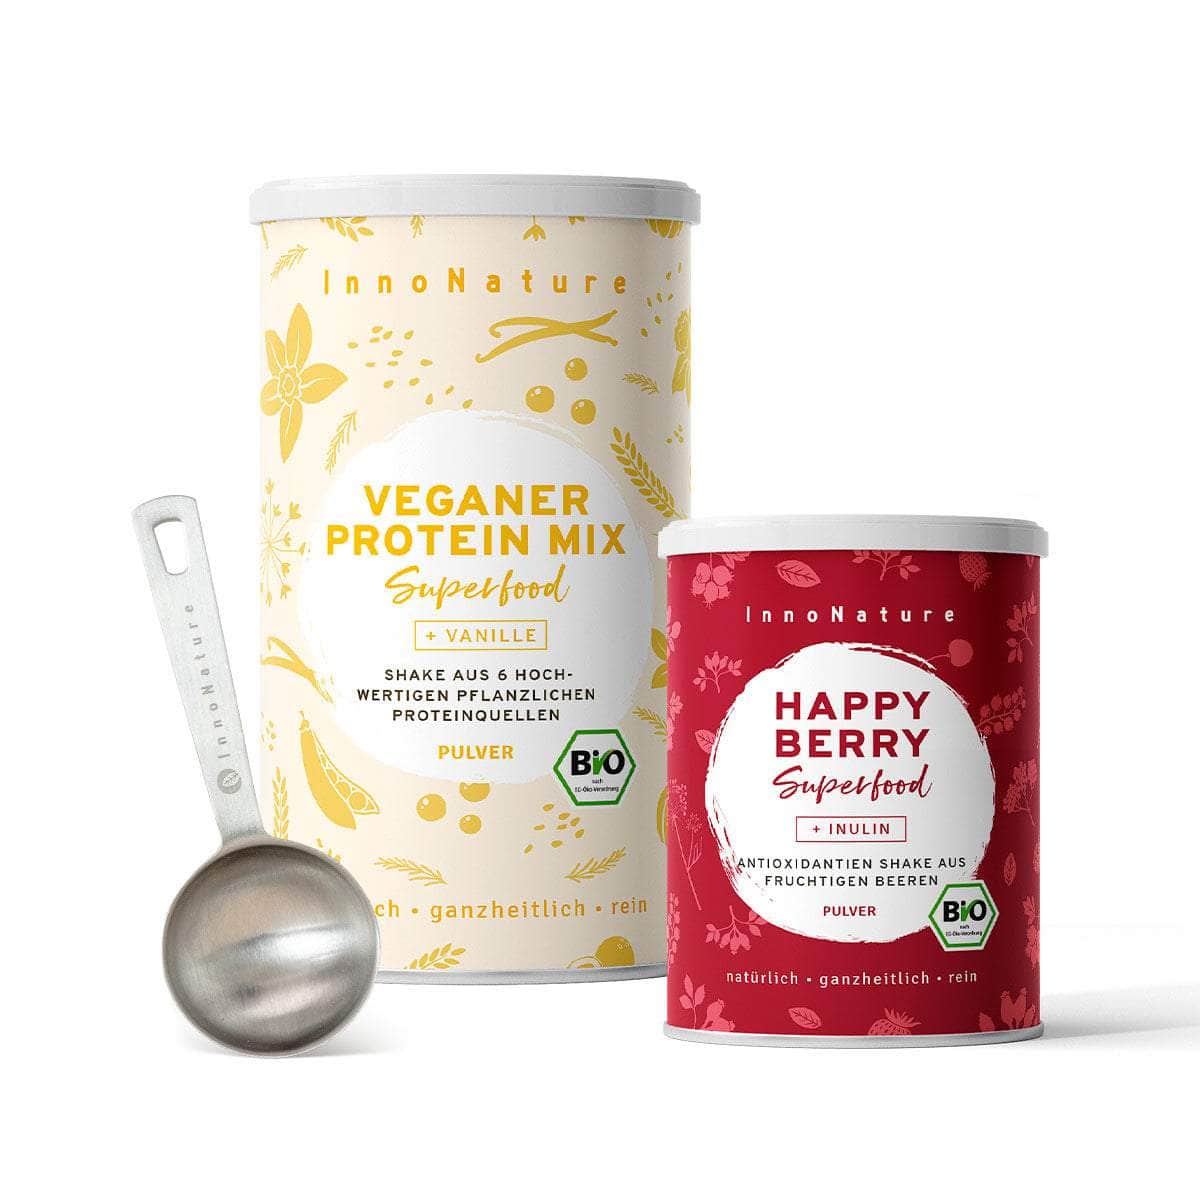 InnoNature Pakete 1x Veganer Protein Mix Vanille, 1x Happy Berry, 1x gratis Messlöffel Shake-Paket